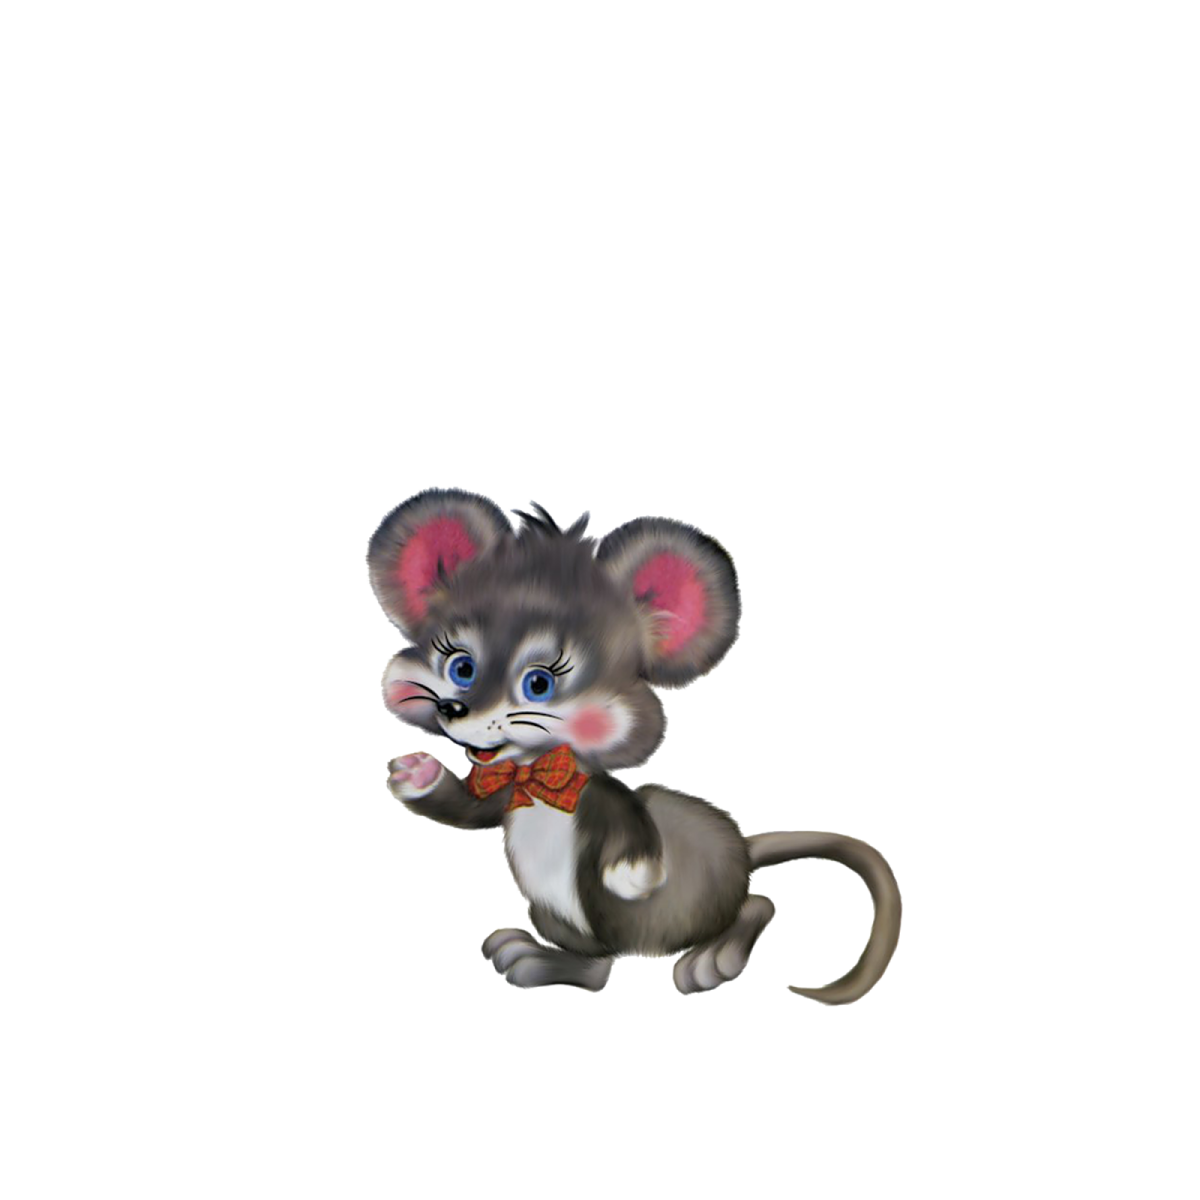 Картинки мышки на прозрачном фоне. Мышка из Репки. Мышка из сказки. Сказочная мышка на прозрачном фоне. Сказочные герои мышка.